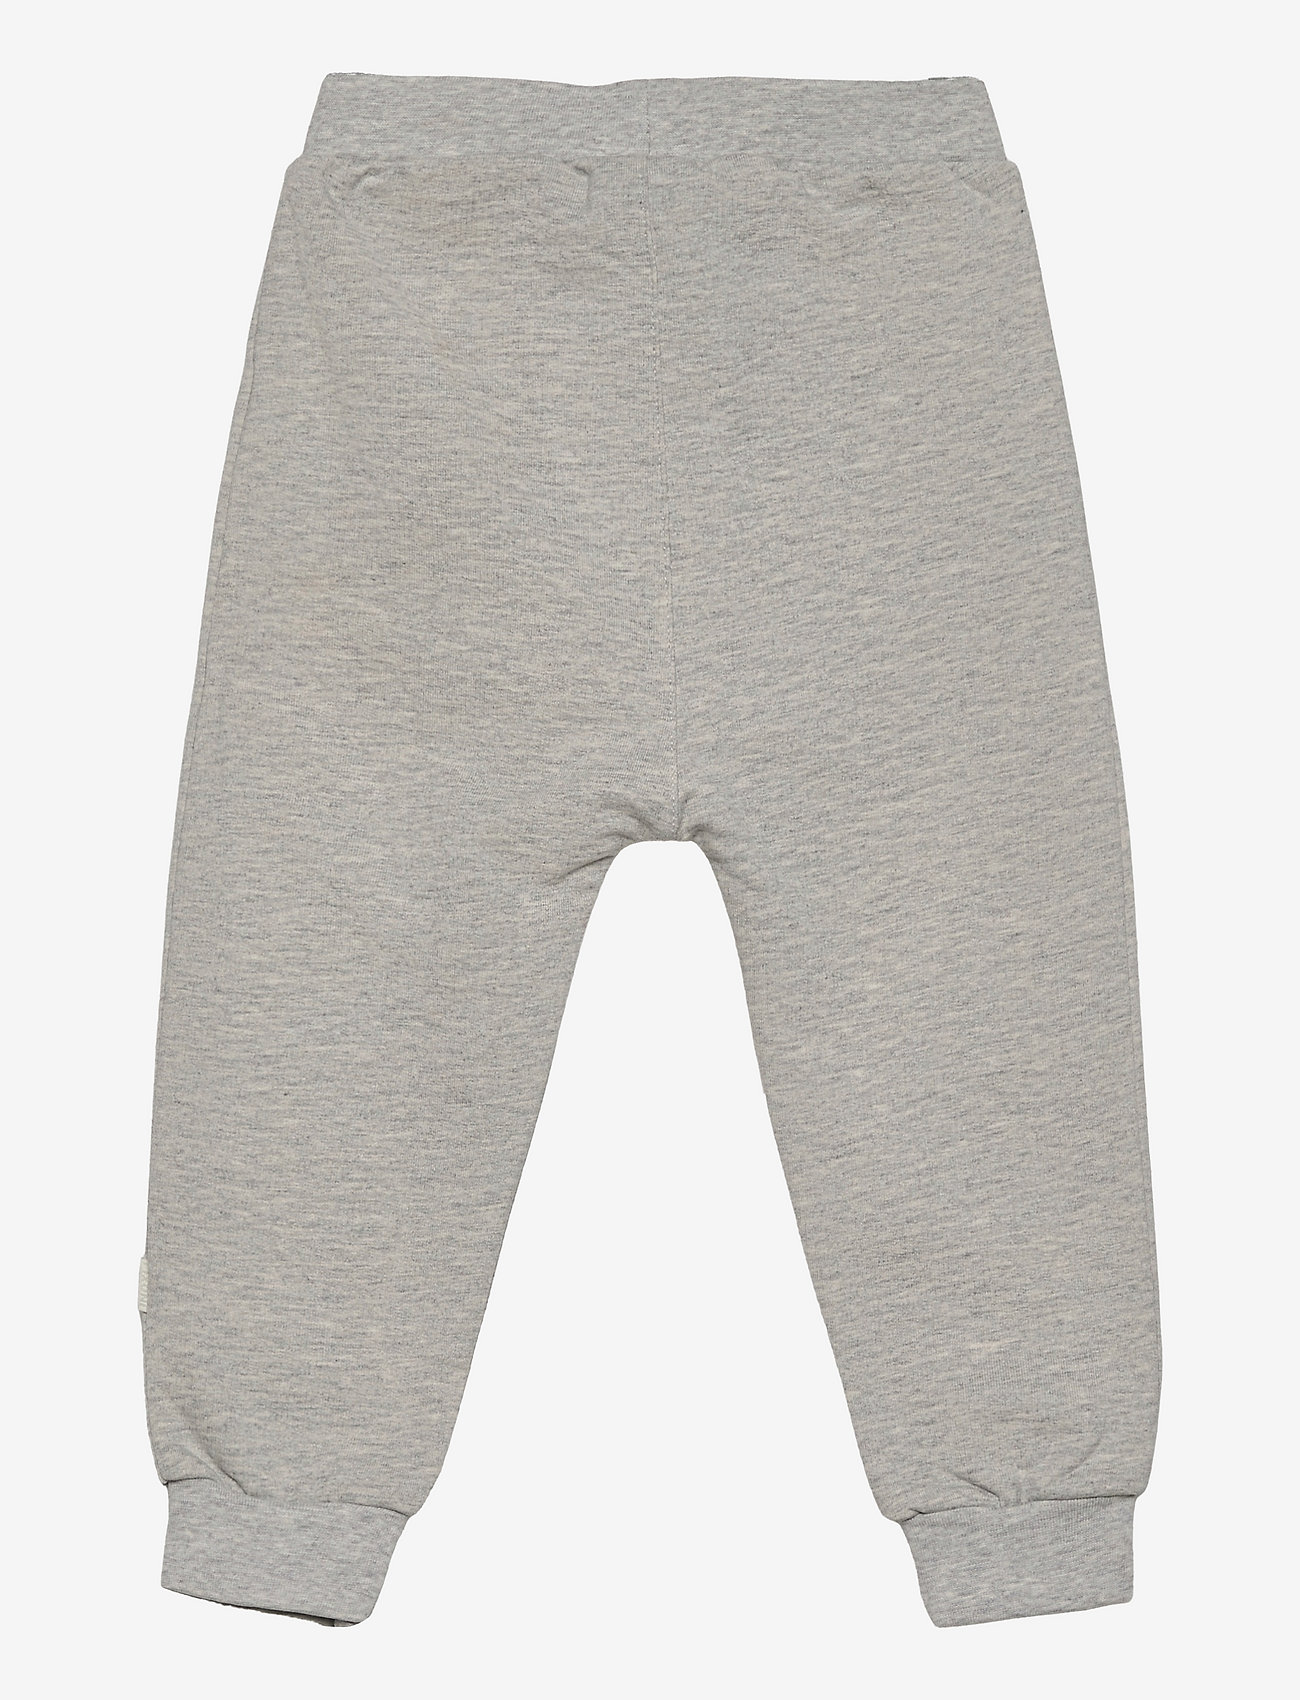 Fixoni - Pants - Unisex - baby trousers - grey melange - 1